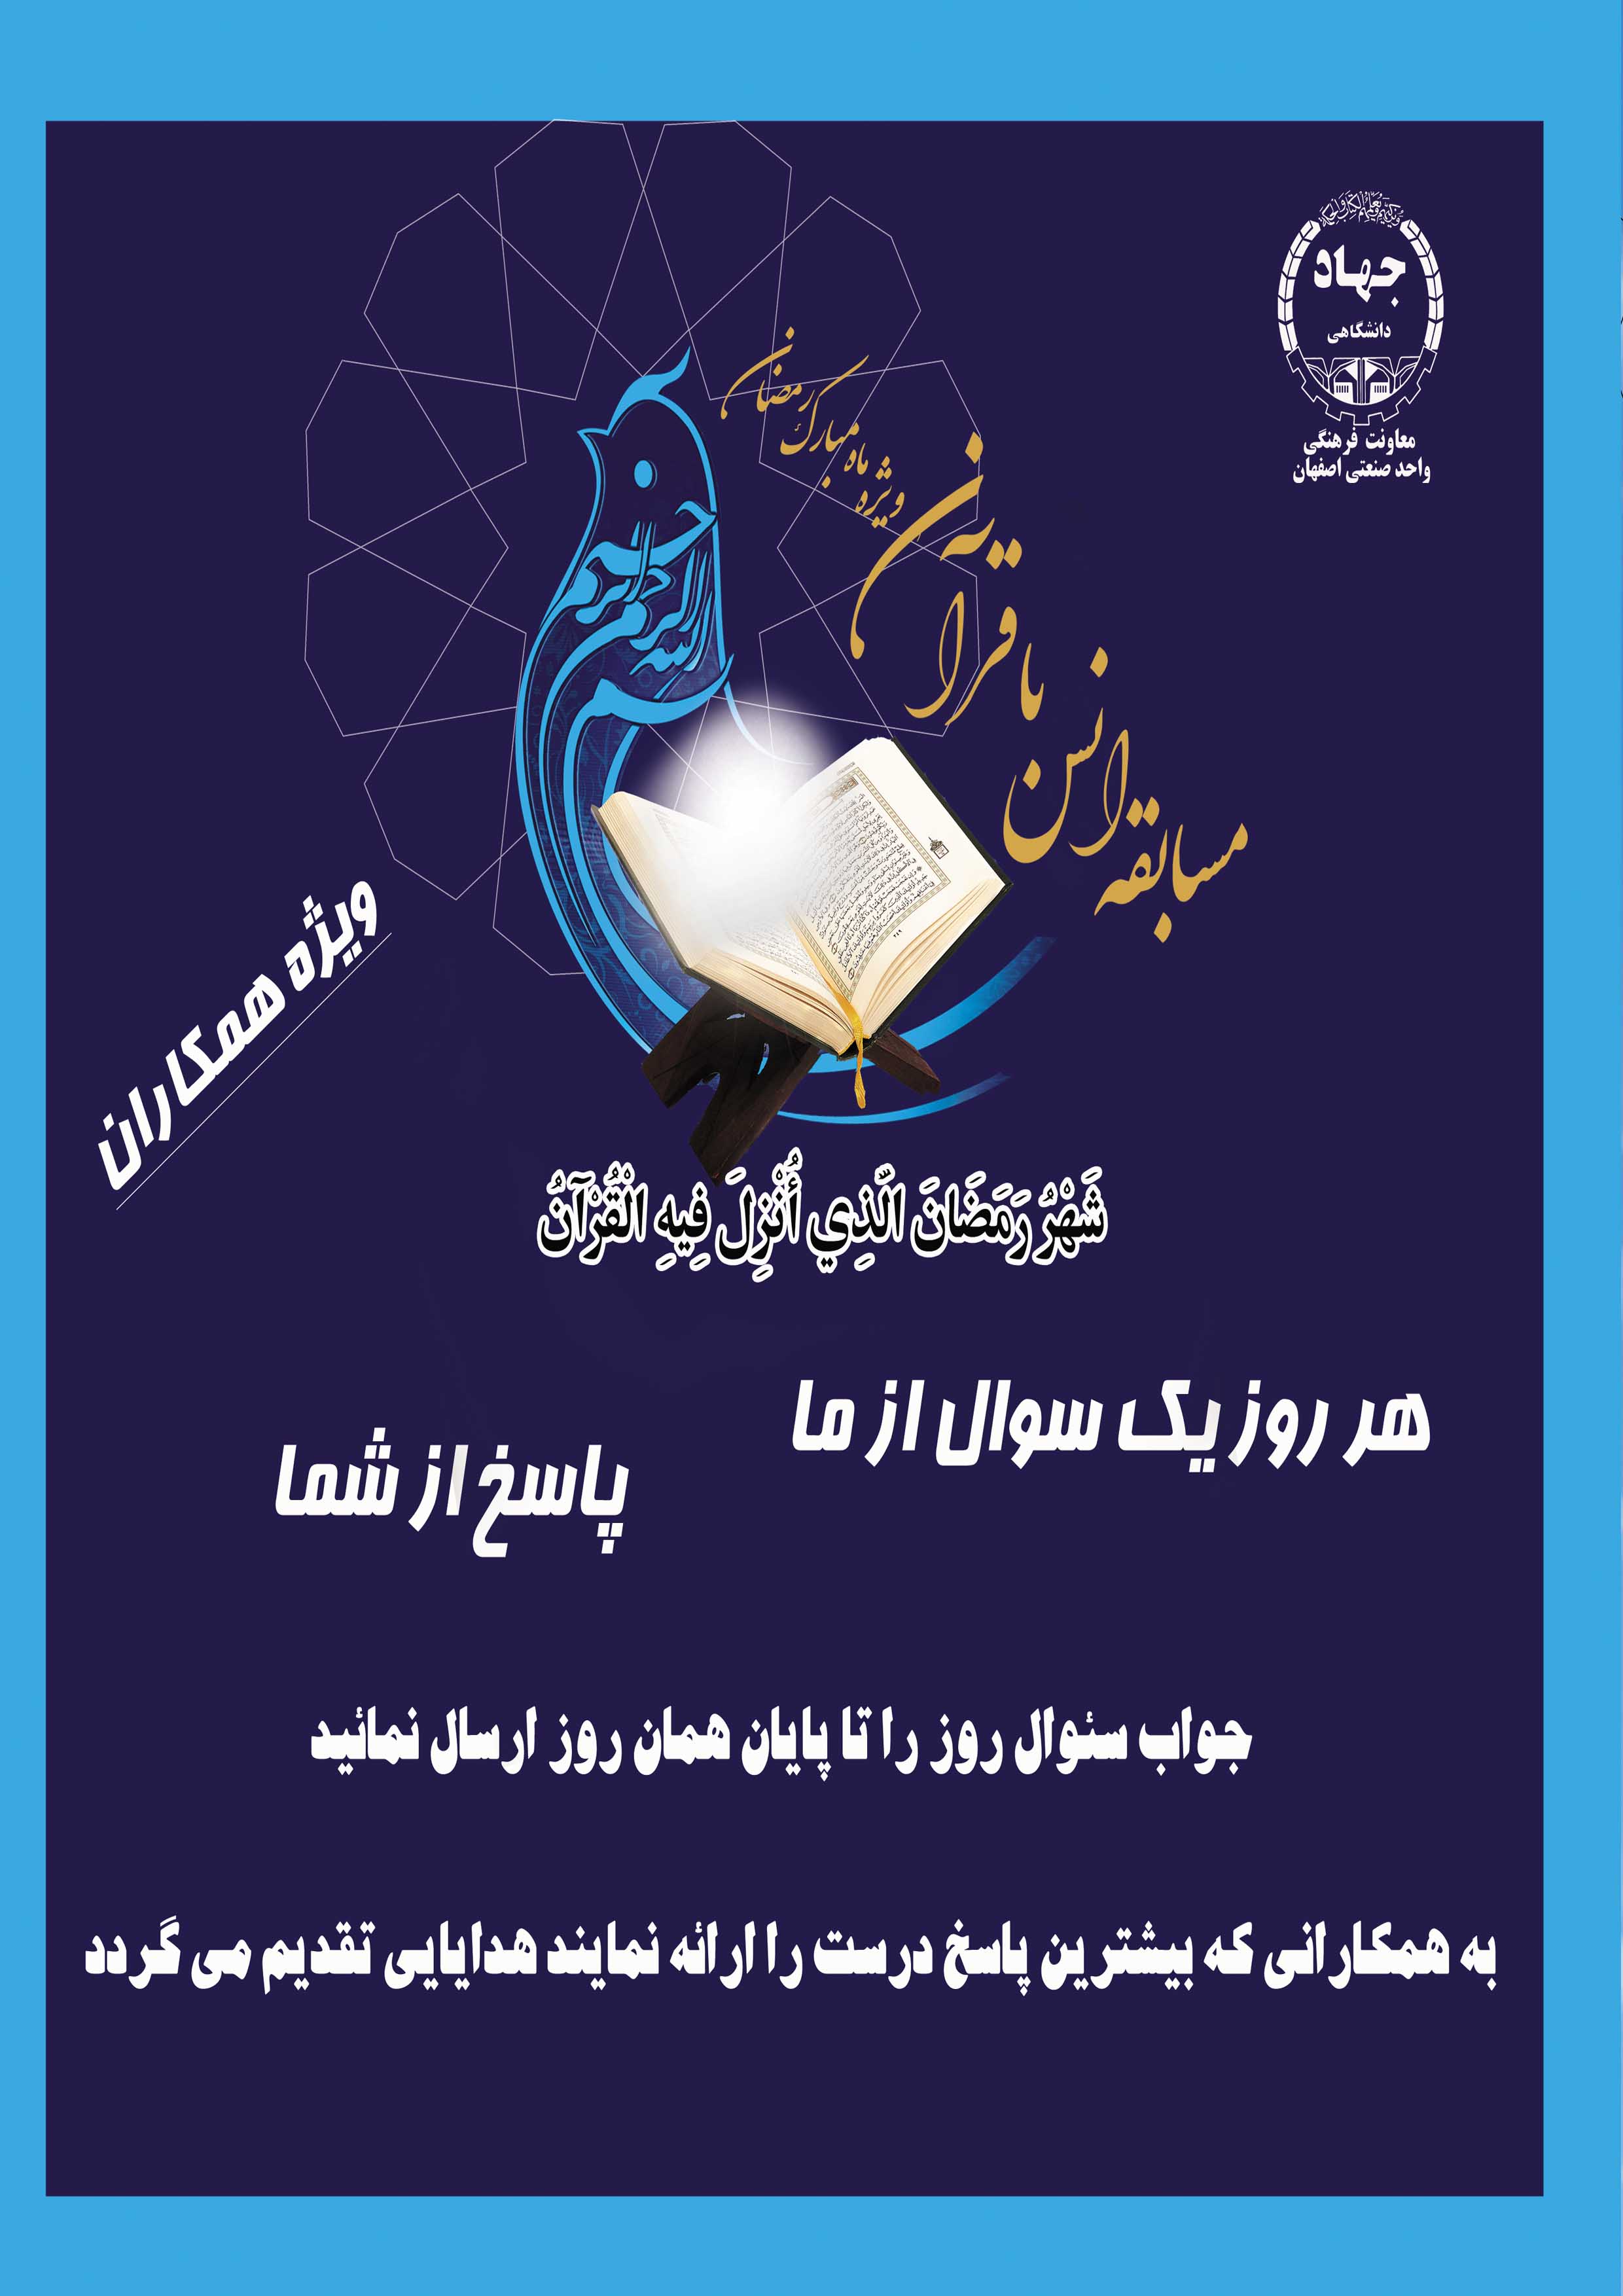 برگزاری مسابقه انس با قرآن